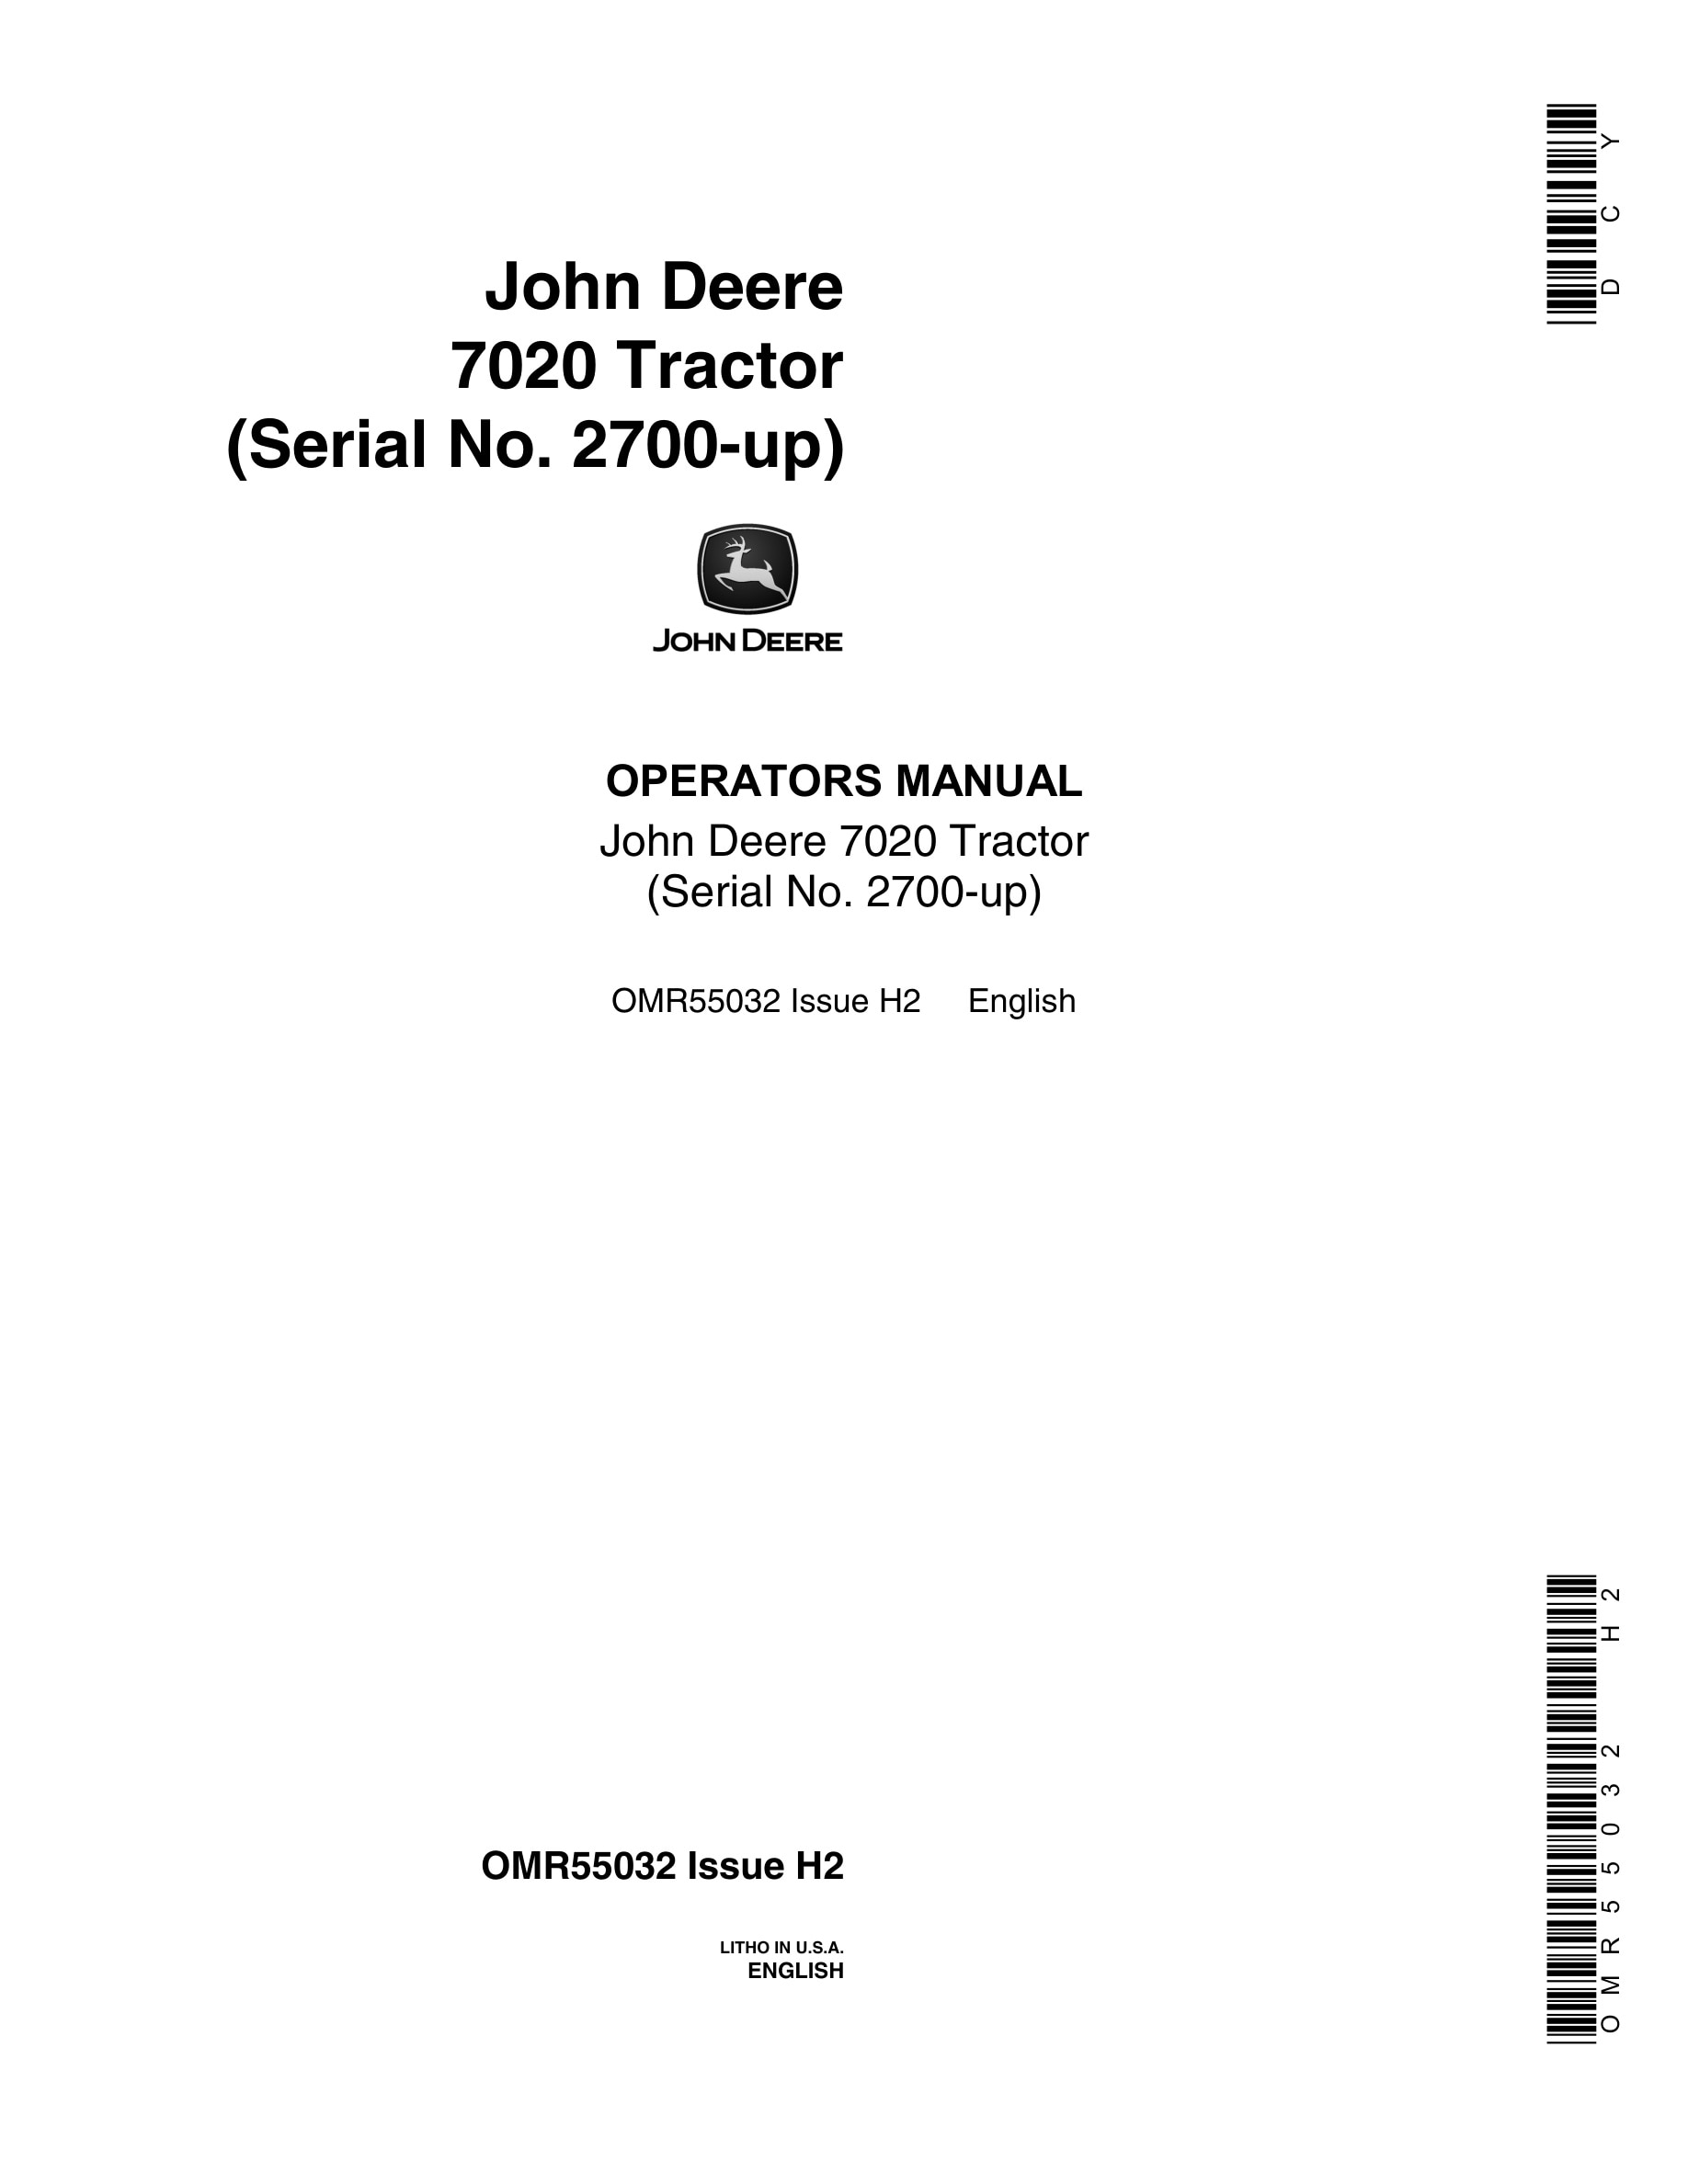 John Deere 7020 Tractor Operator Manual OMR55032-1